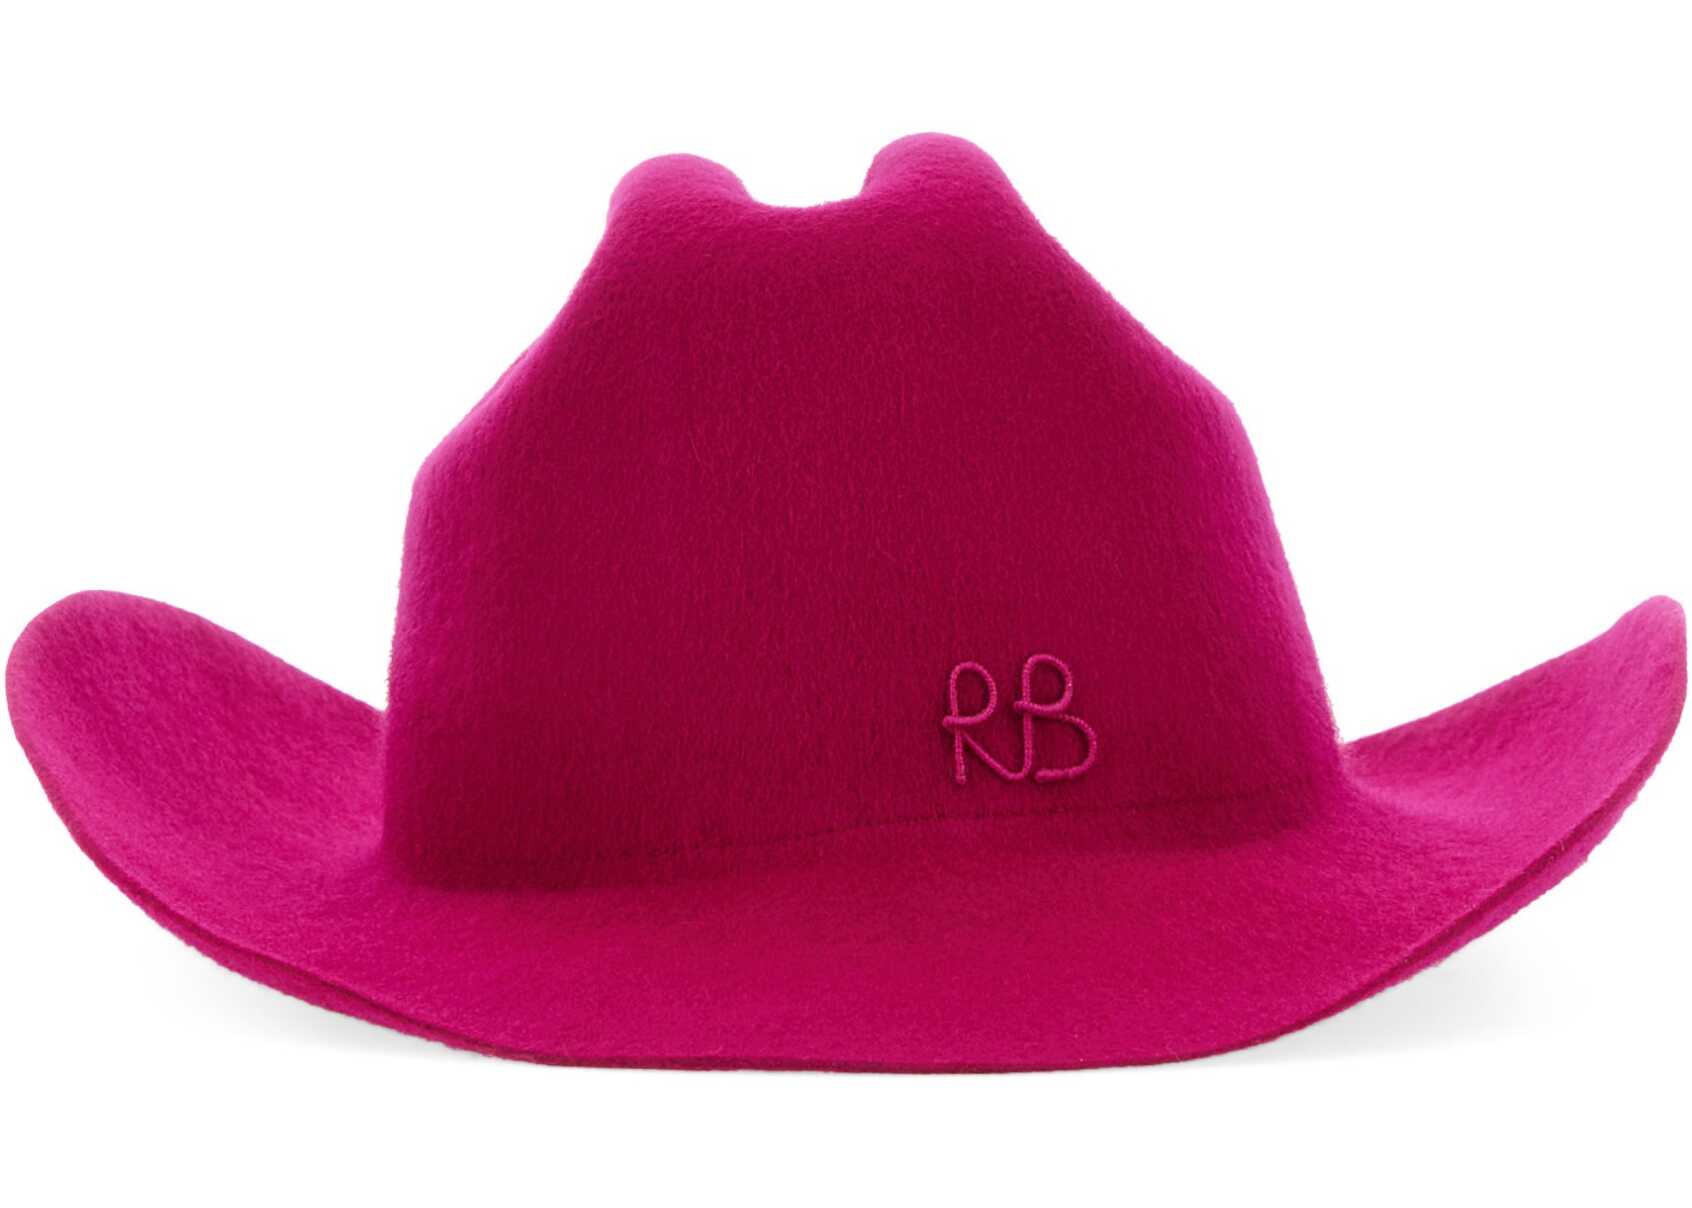 RUSLAN BAGINSKIY Cowboy Hat FUCHSIA image2